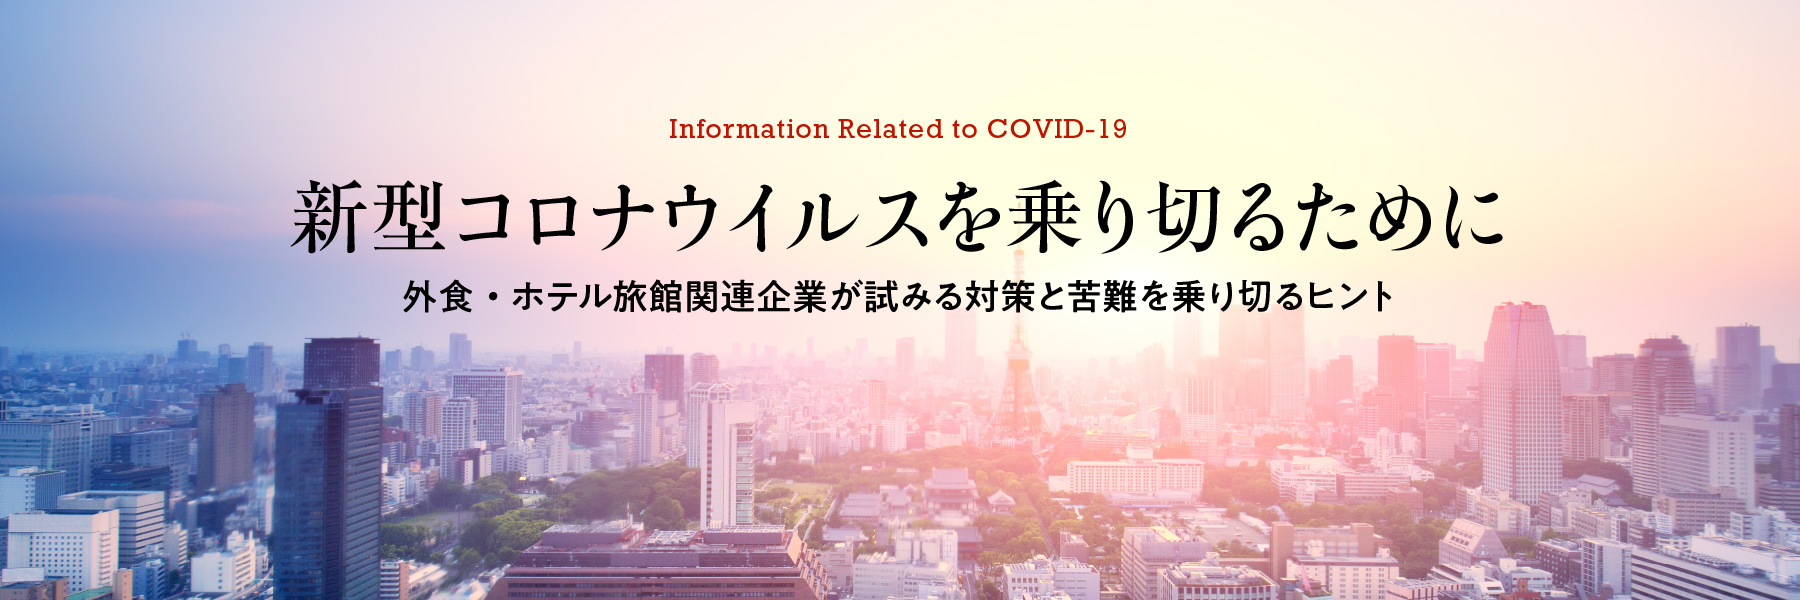 Information Related to COVID-19　新型コロナウイルスを乗り切るために　外食・ホテル旅館関連企業が試みる対策と苦難を乗り切るヒント